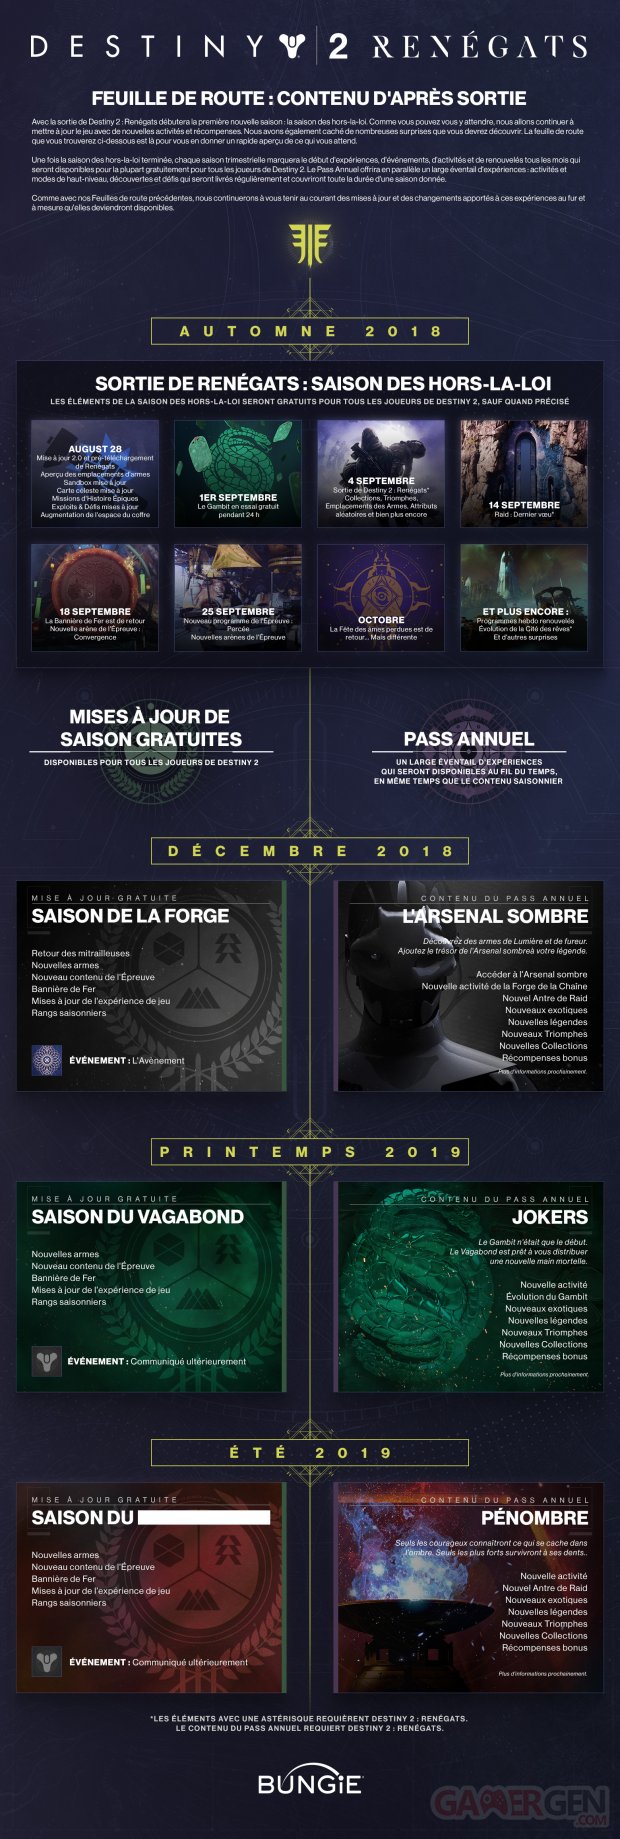 Destiny 2 Renégats infographie Année 2 contenu post lancement 28 08 2018